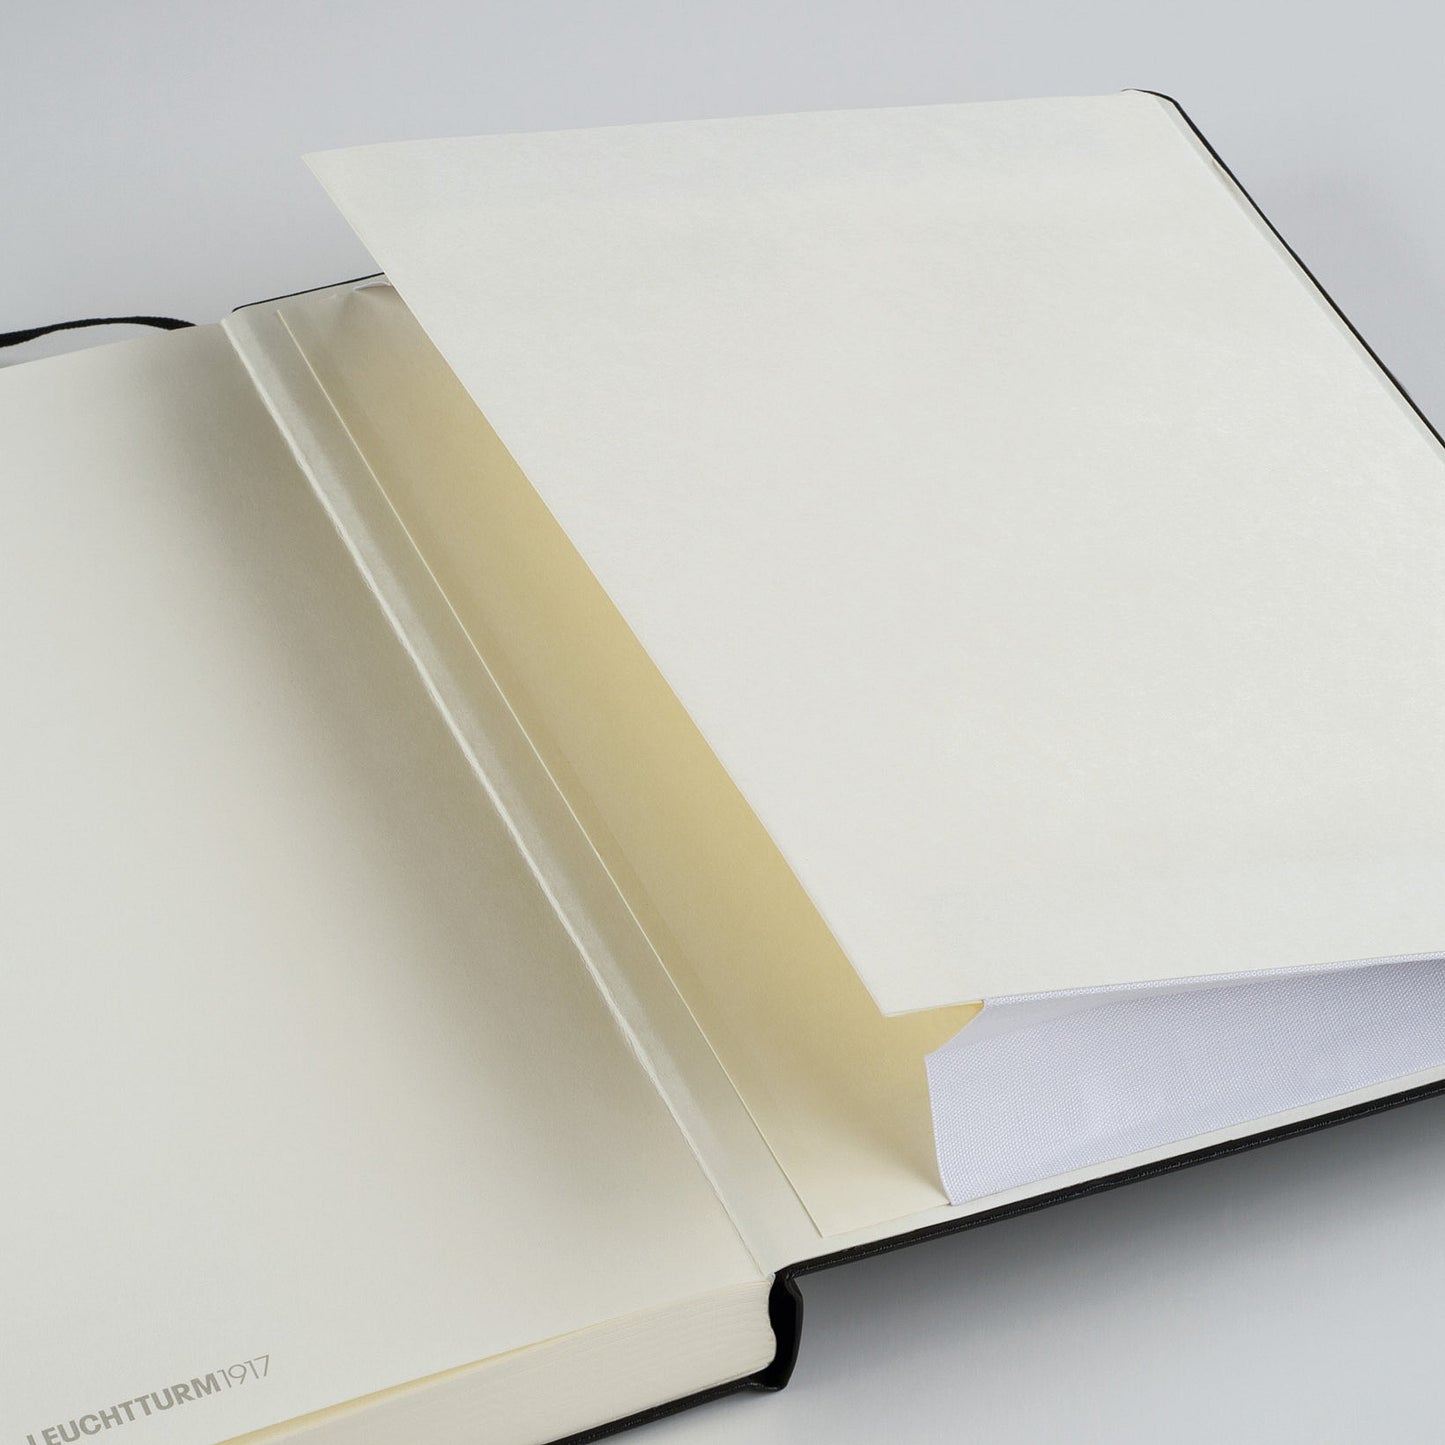 Leuchtturm1917 A5 Medium Hardcover Notebook - Royal Blue / Dotted